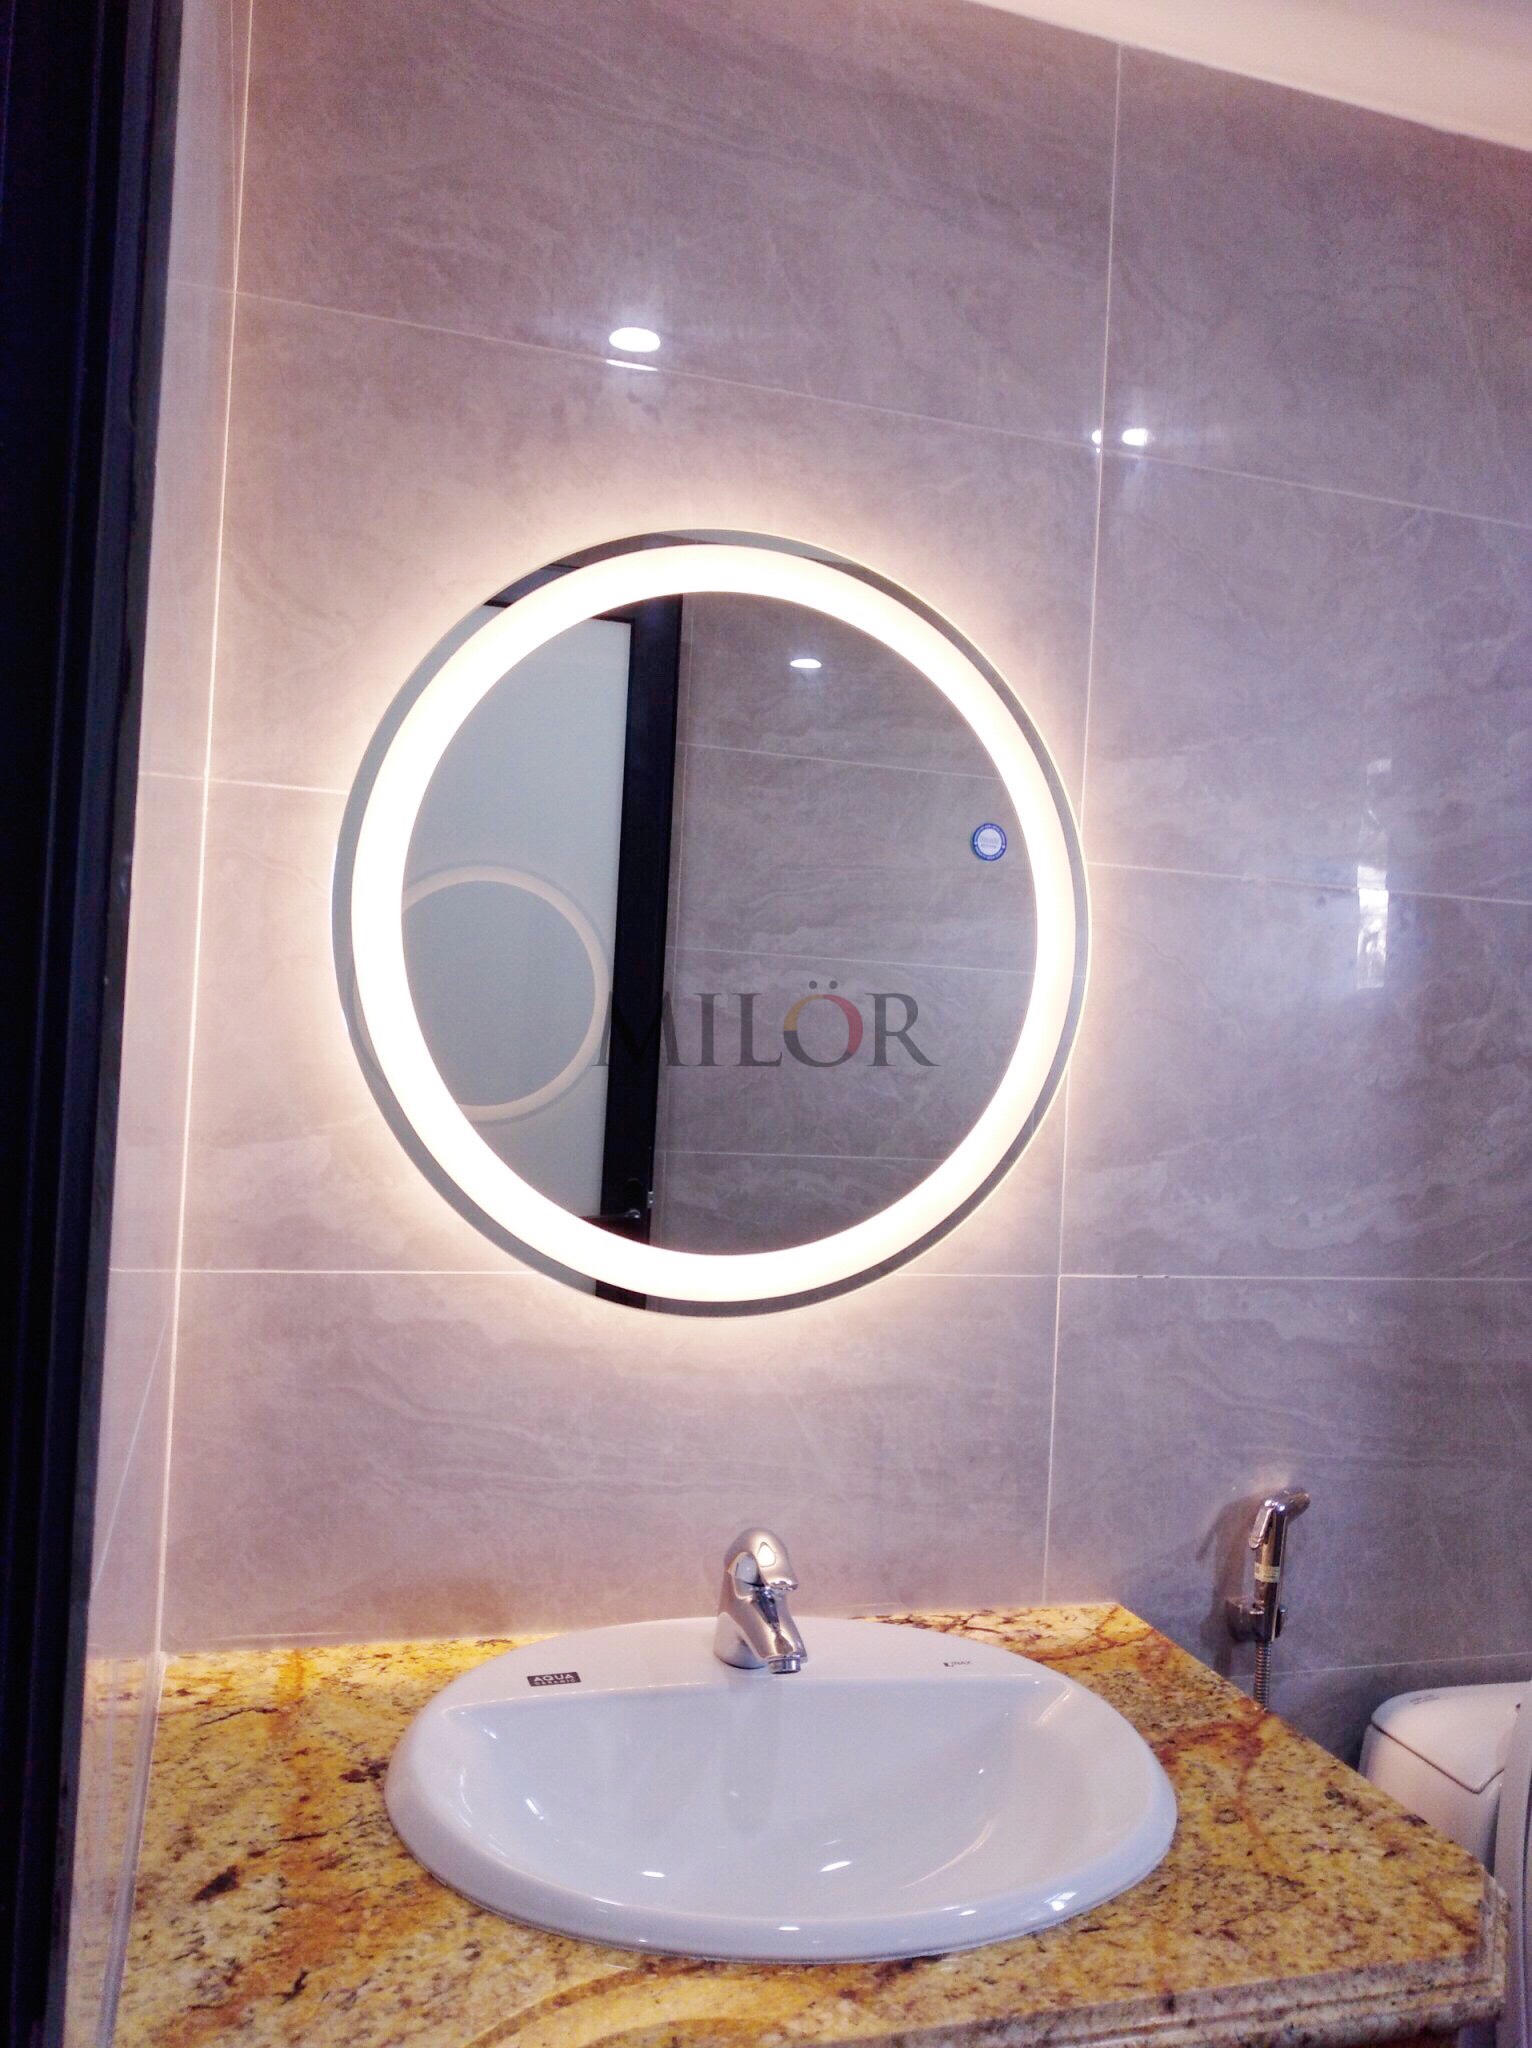 Gương tròn đèn led nhà tắm giúp tạo điểm nhấn cho không gian phòng tắm của bạn. Đèn led chiếu sáng tinh tế giúp làm nổi bật chi tiết trên gương, cơ thể và trang phục của bạn, mang đến không gian tắm hiện đại và sang trọng. Cùng khám phá hình ảnh để thưởng thức vẻ đẹp độc đáo của chiếc gương tròn đèn led này.